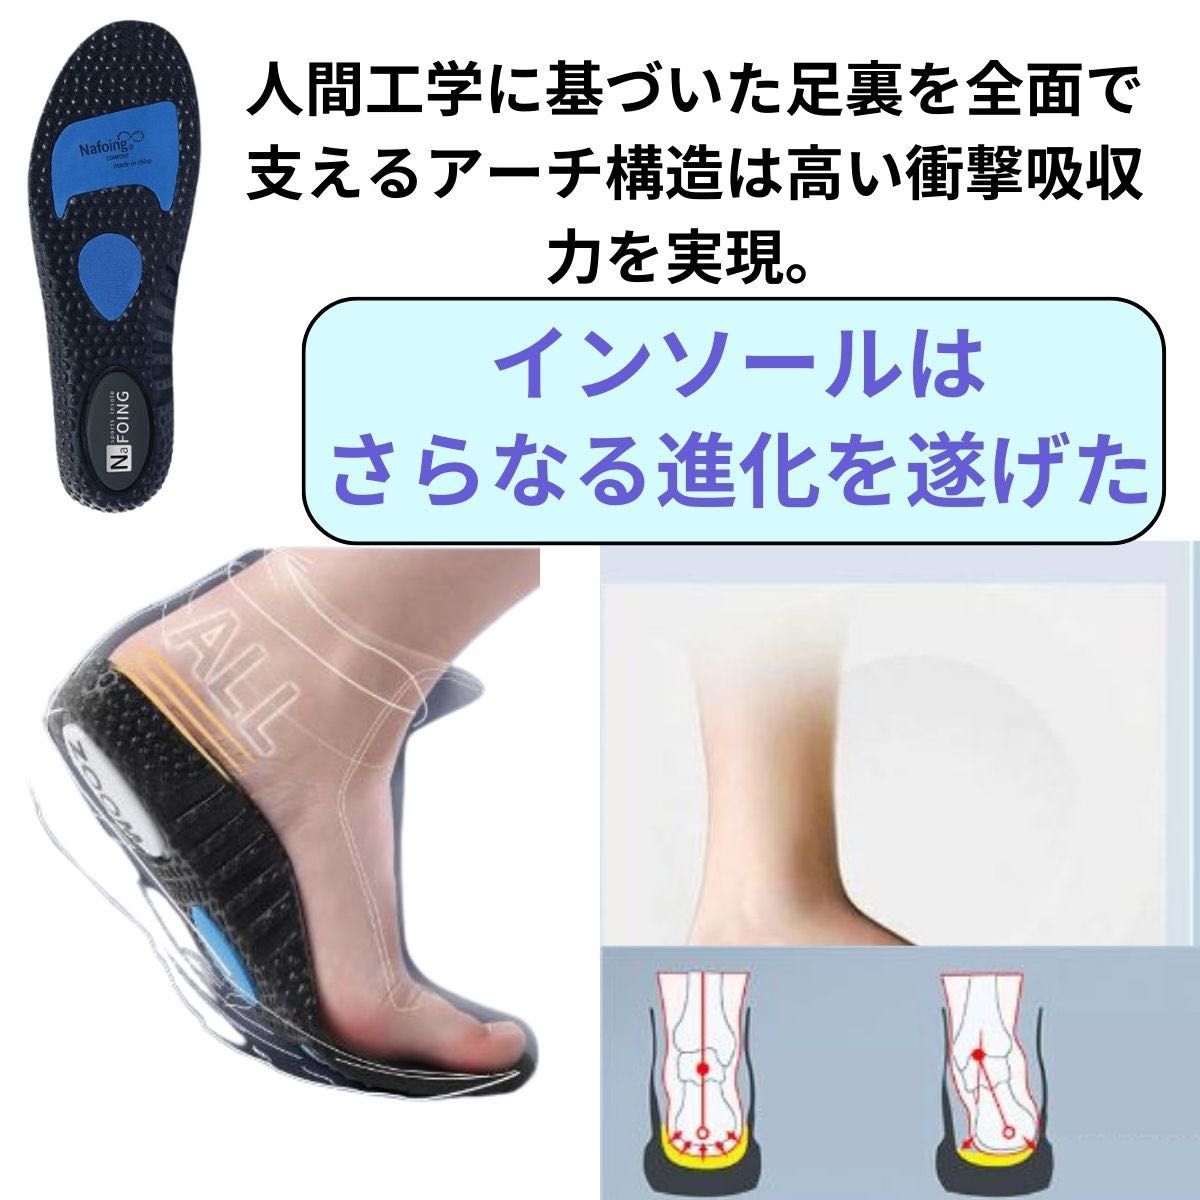 インソール 新型 衝撃吸収 中敷き 抗菌 正規品 靴底安定 蒸れない 男女兼用 扁平足 アーチサポート 立ち仕事 ランニング靴